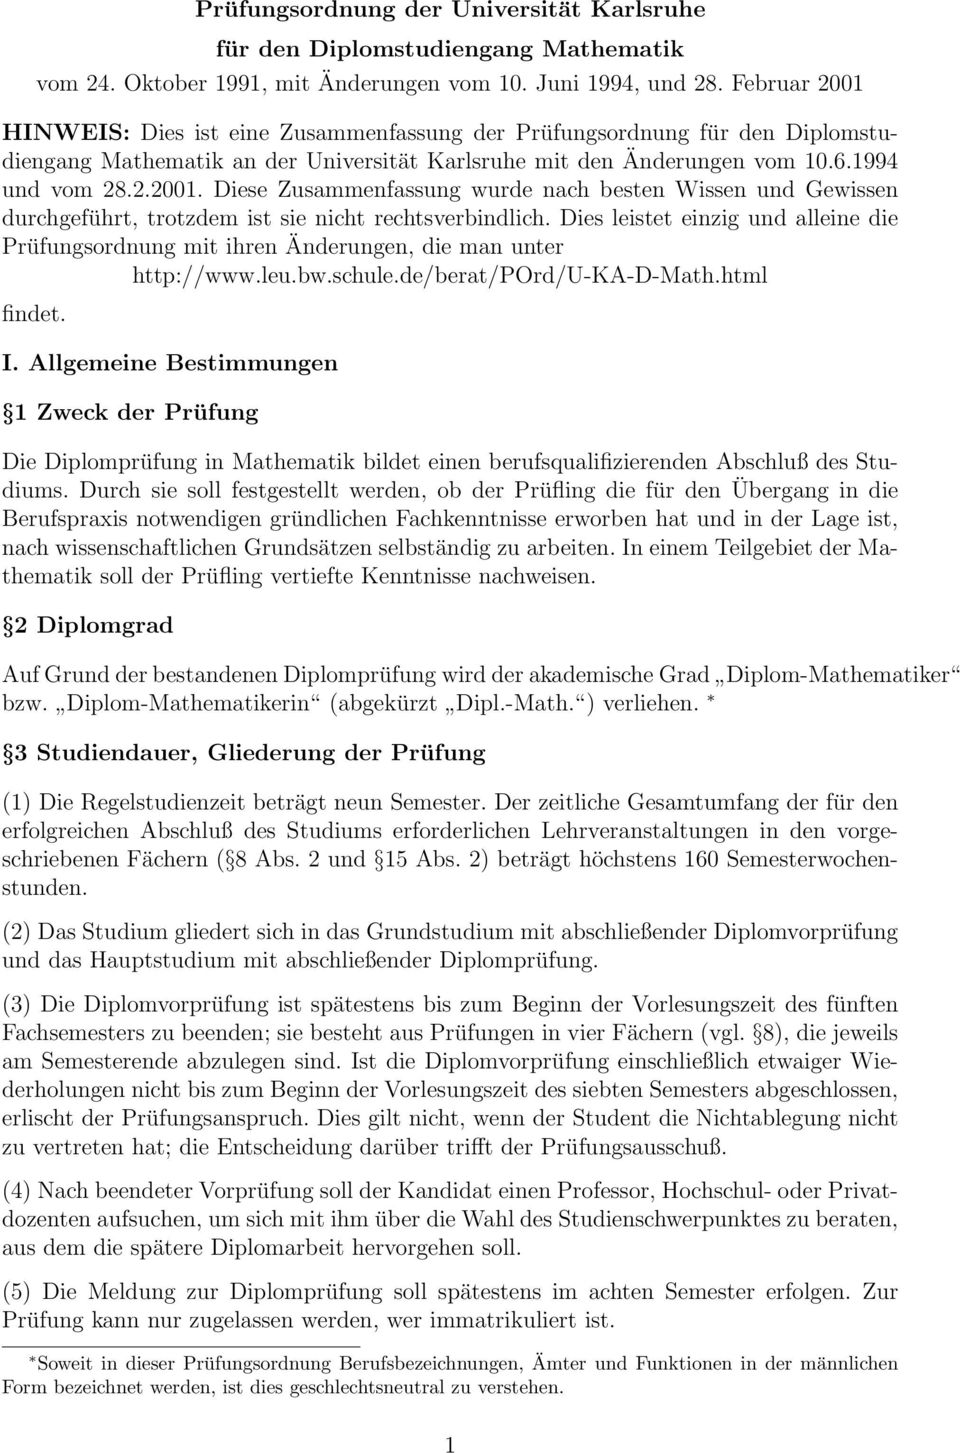 Dies leistet einzig und alleine die Prüfungsordnung mit ihren Änderungen, die man unter http://www.leu.bw.schule.de/berat/pord/u-ka-d-math.html findet. I.